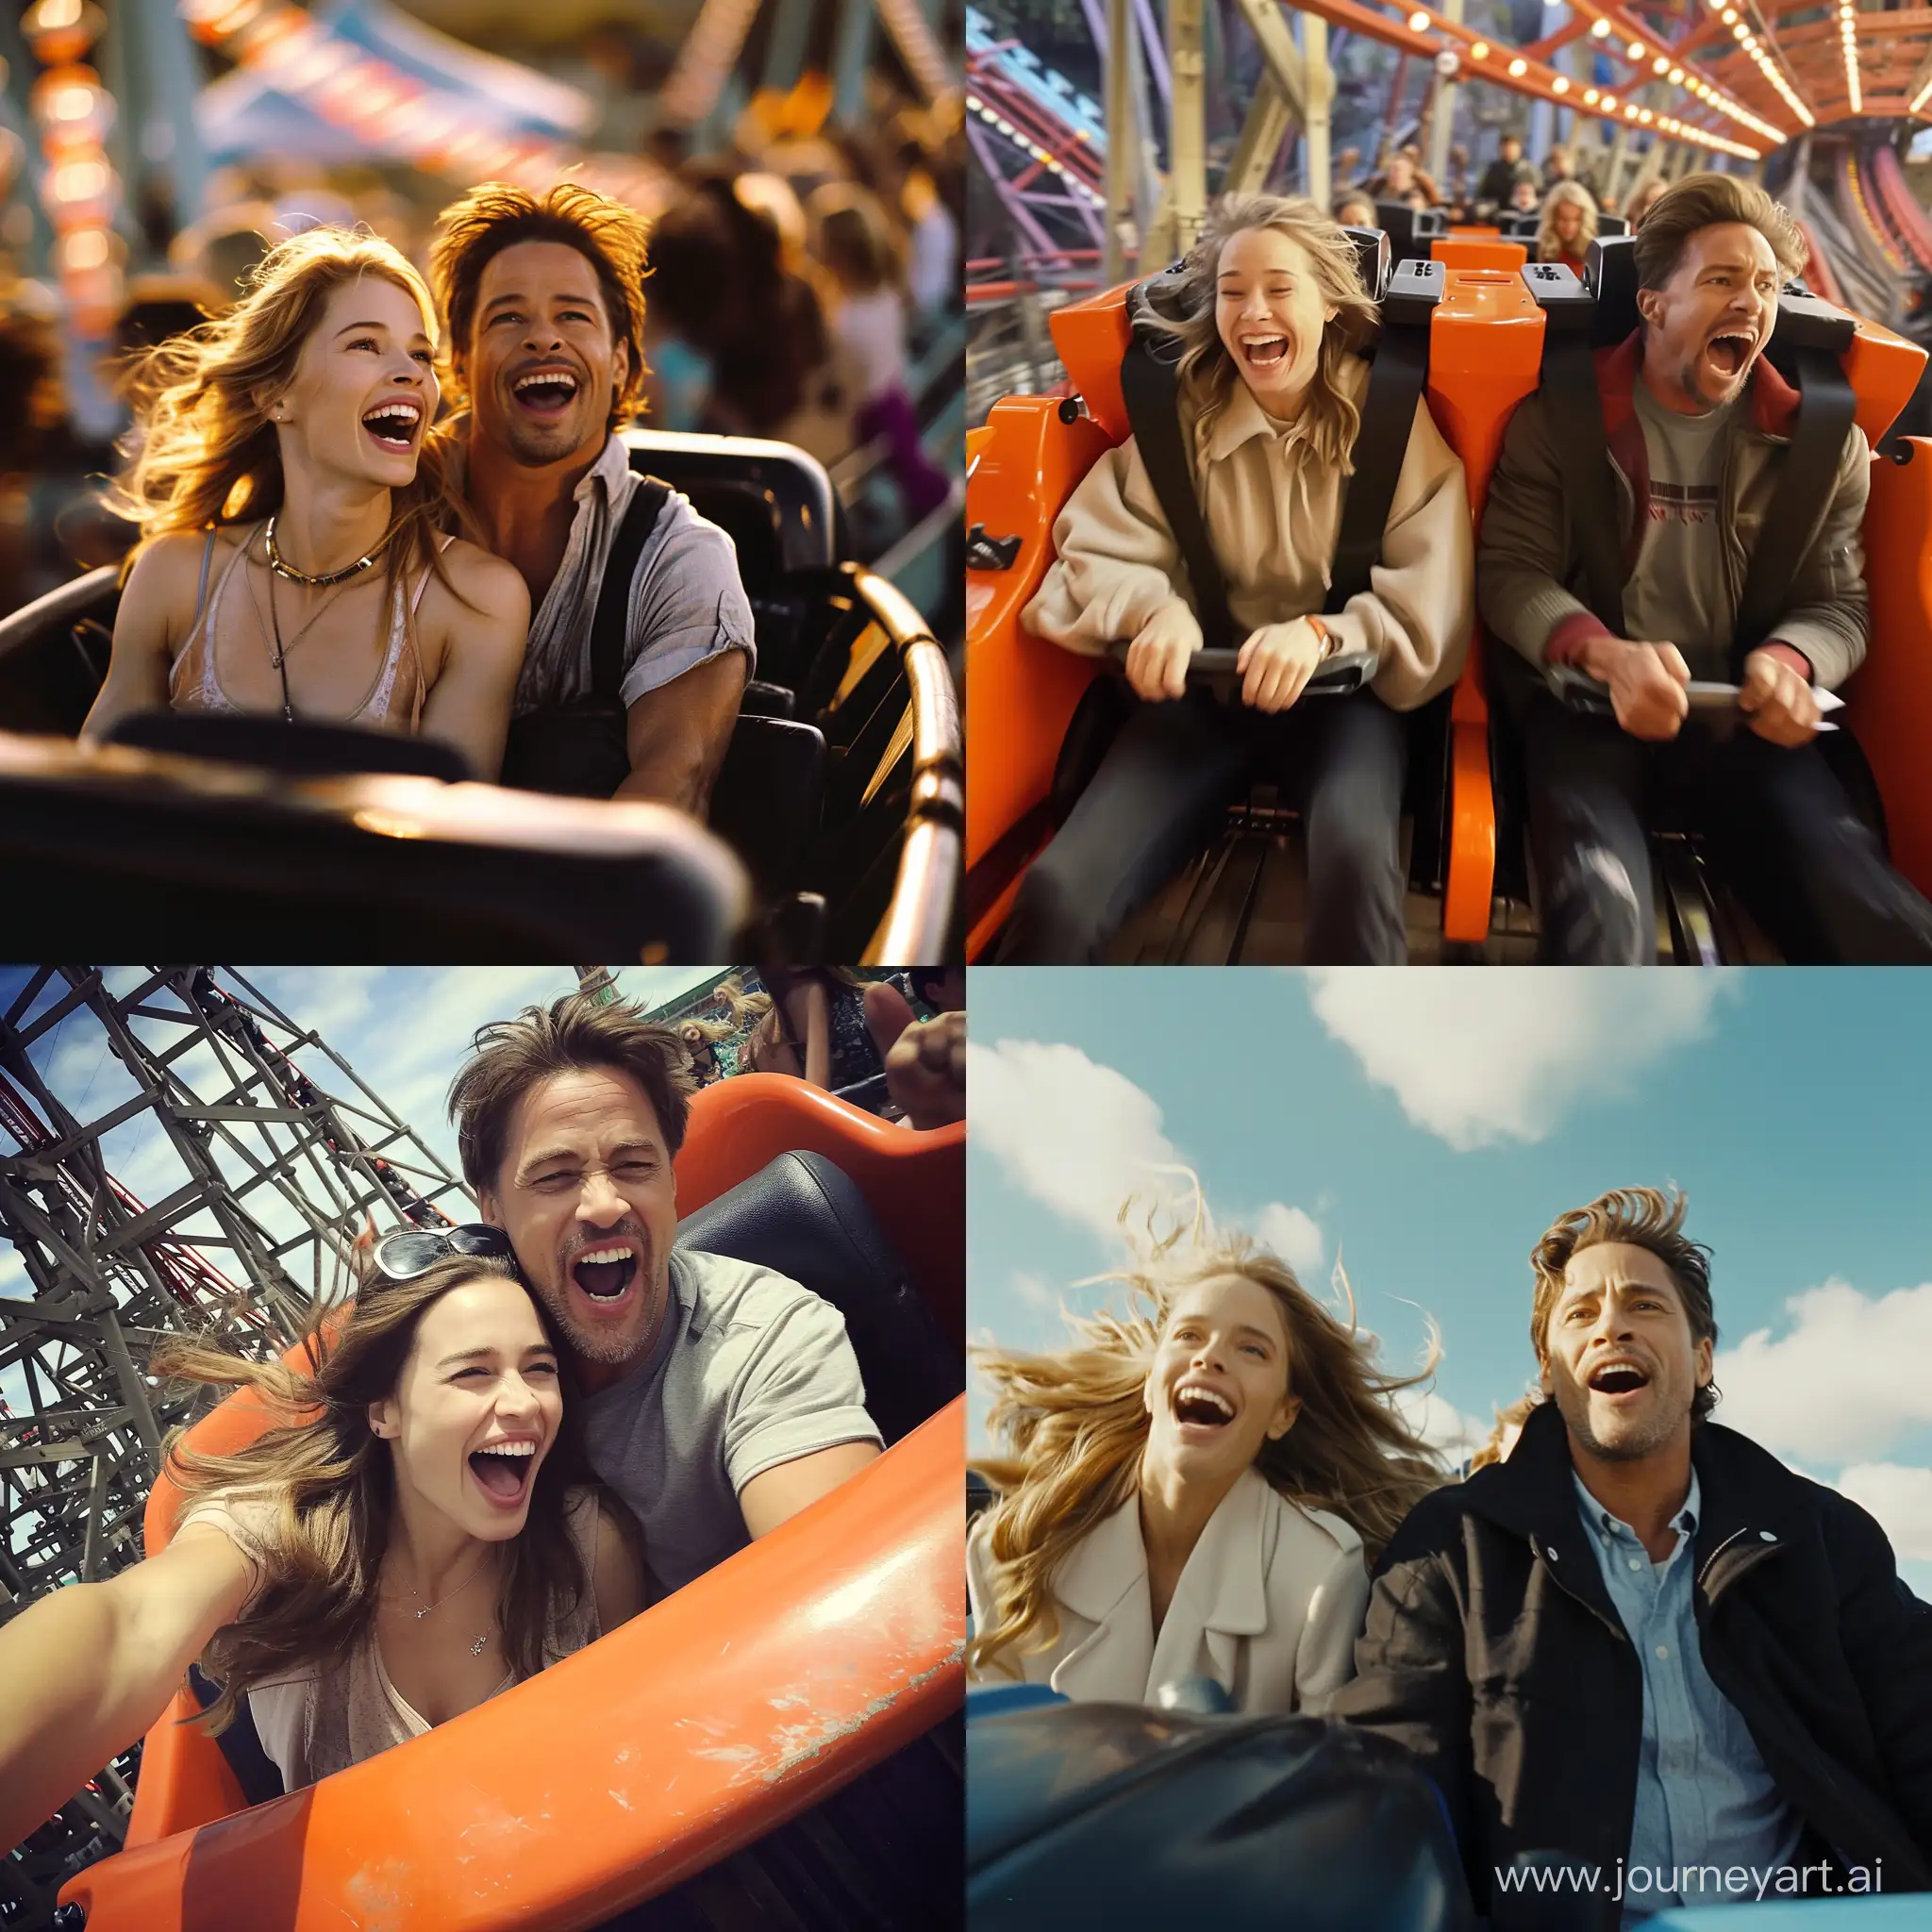 emilia clarke and bradd pitt in a rollercoaster